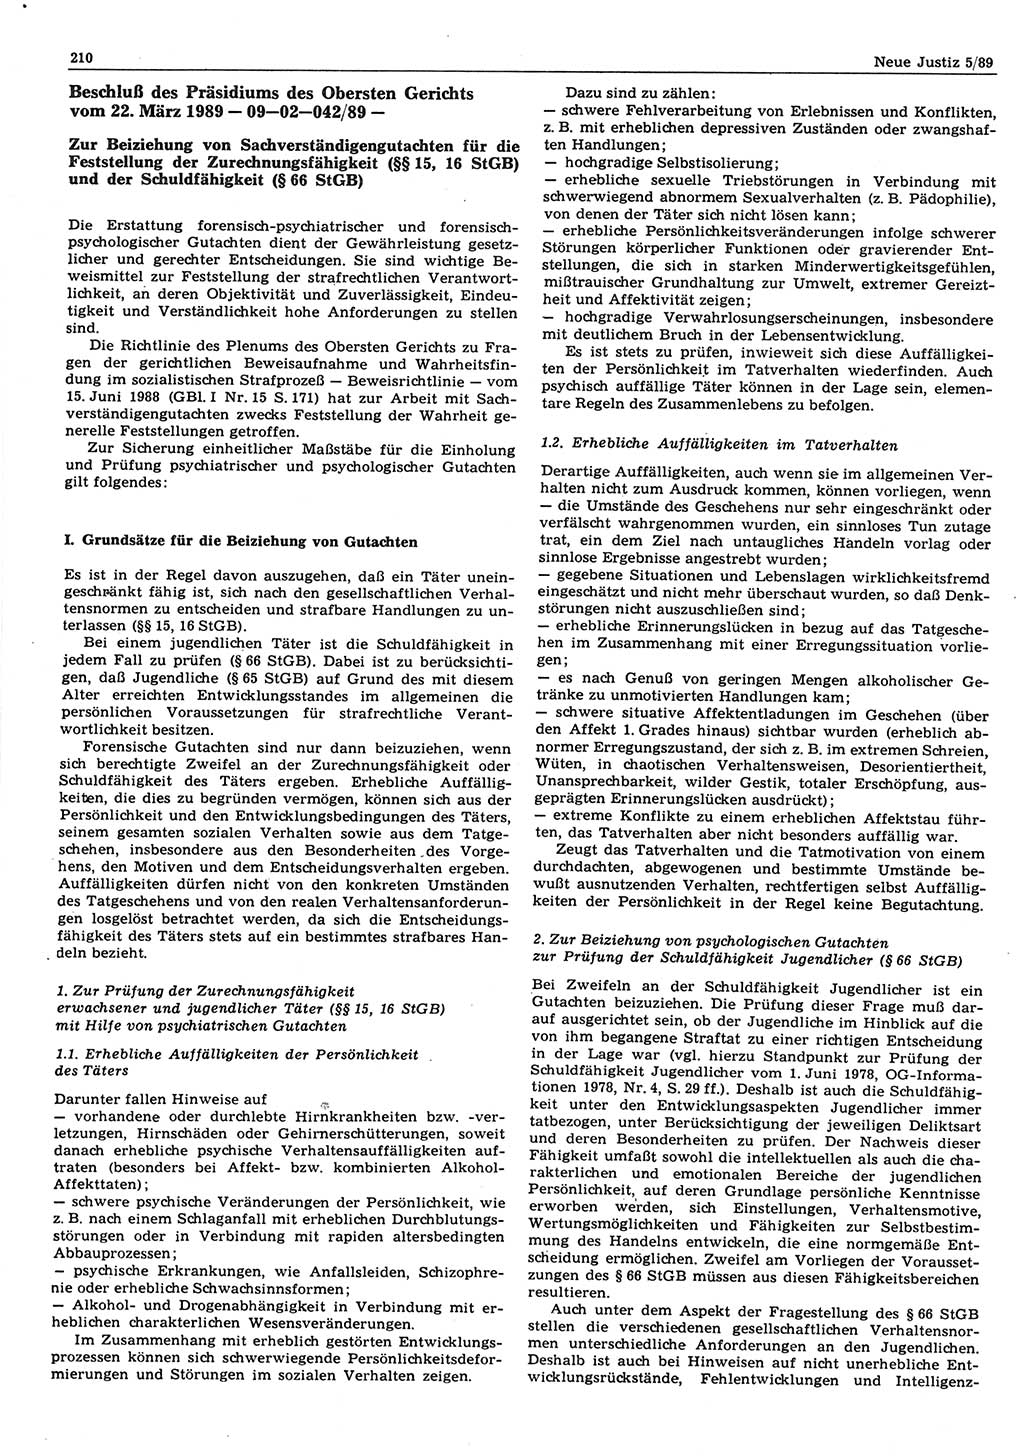 Neue Justiz (NJ), Zeitschrift für sozialistisches Recht und Gesetzlichkeit [Deutsche Demokratische Republik (DDR)], 43. Jahrgang 1989, Seite 210 (NJ DDR 1989, S. 210)